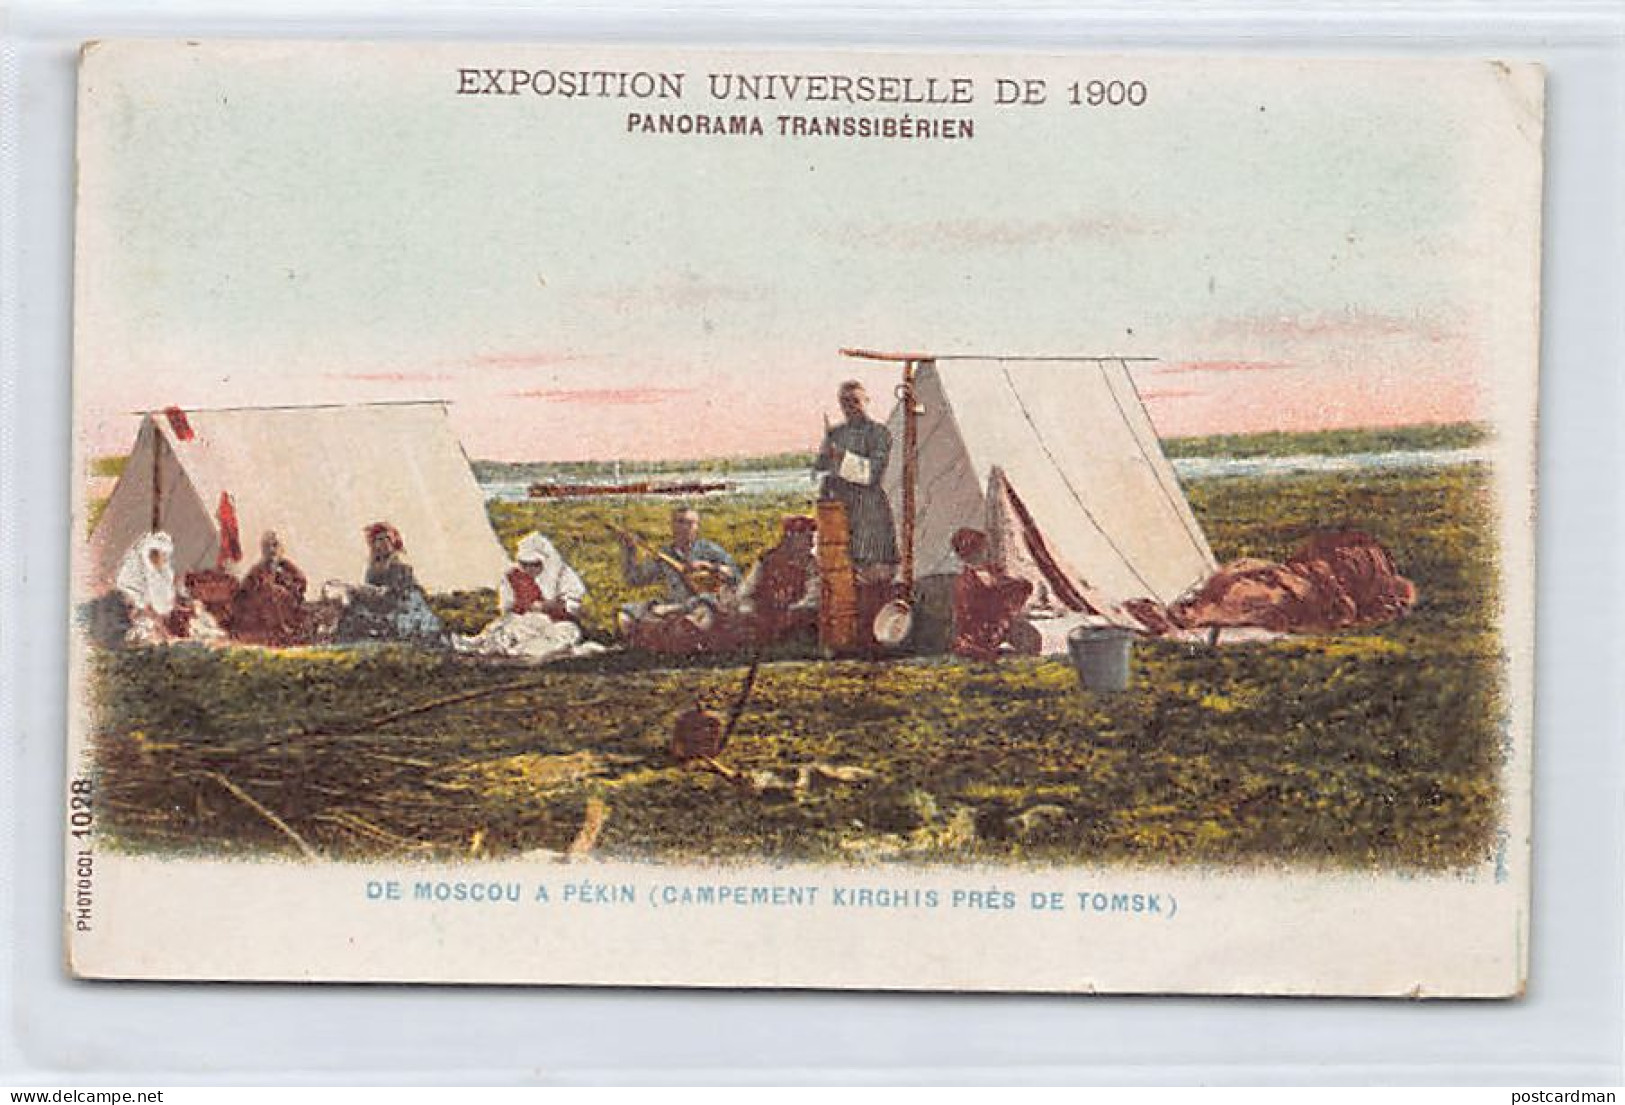 Kyrgyzstan - Kyrgyz Camp Near Tomsk, In Russia - Universal Exhibition In Paris 1900 - Kirgisistan